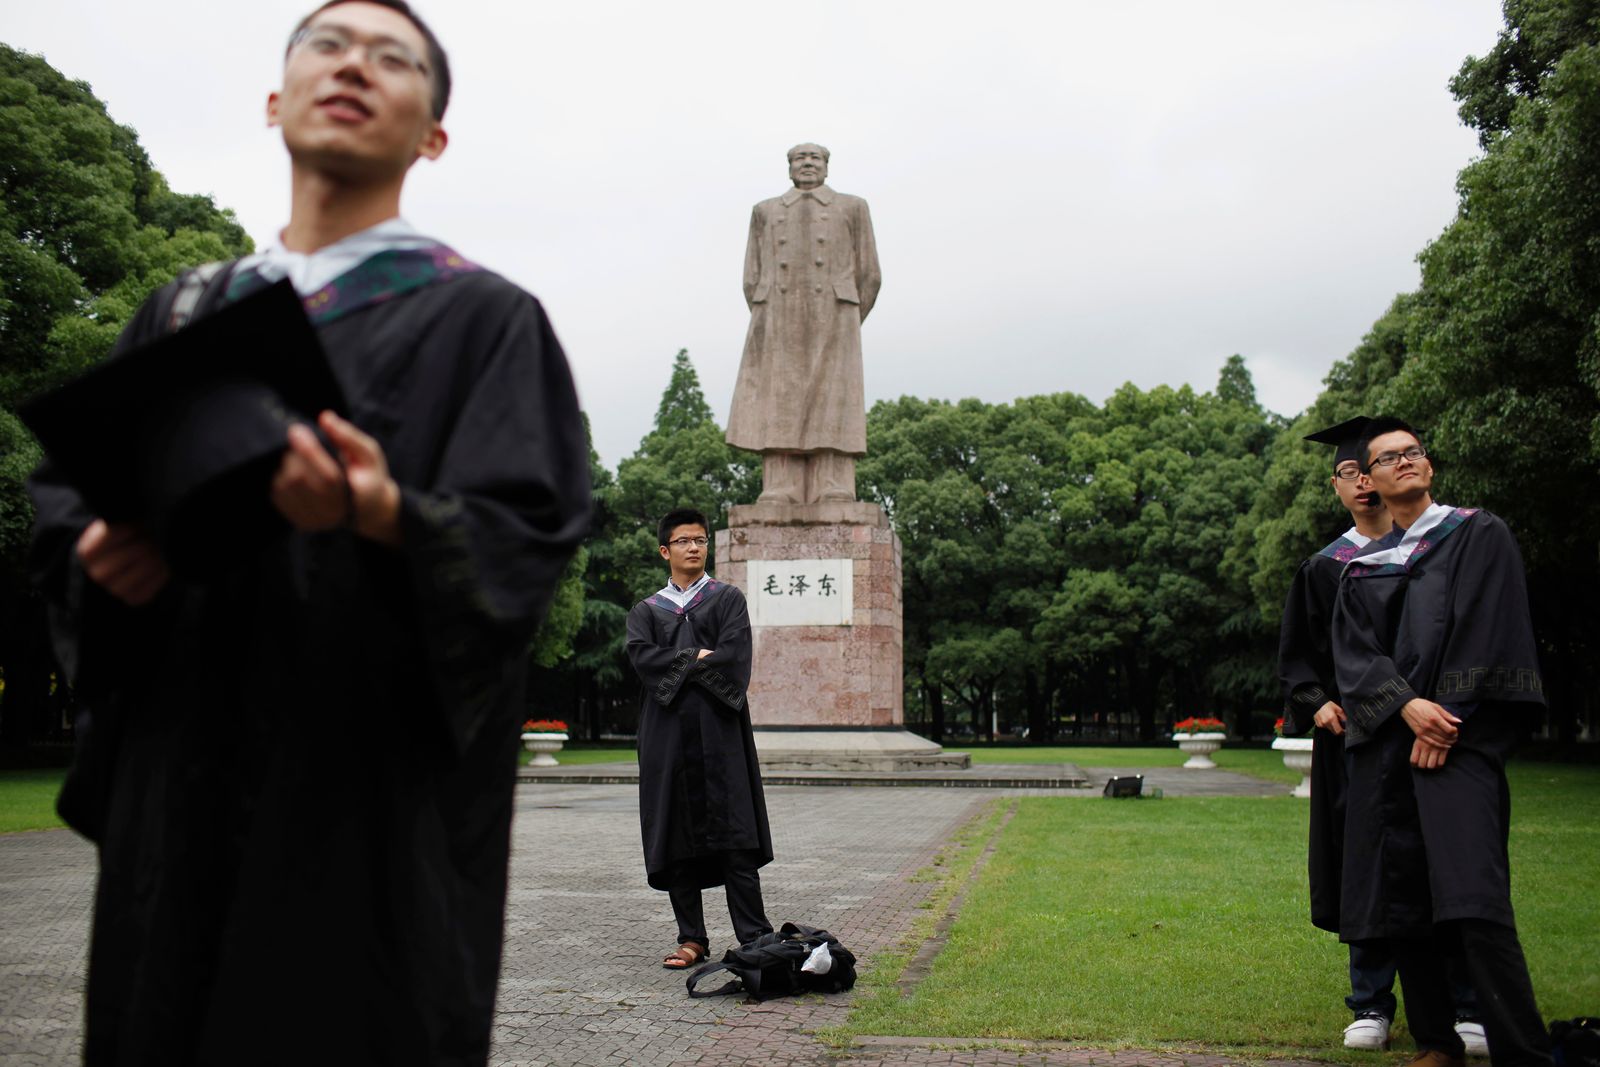 خريجون في جامعة فودان بشنغهاي ياتقطون صورة أمام تمثال للزعيم الصيني الراحل ماو تسي تونغ - 28 يونيو 2013 - REUTERS